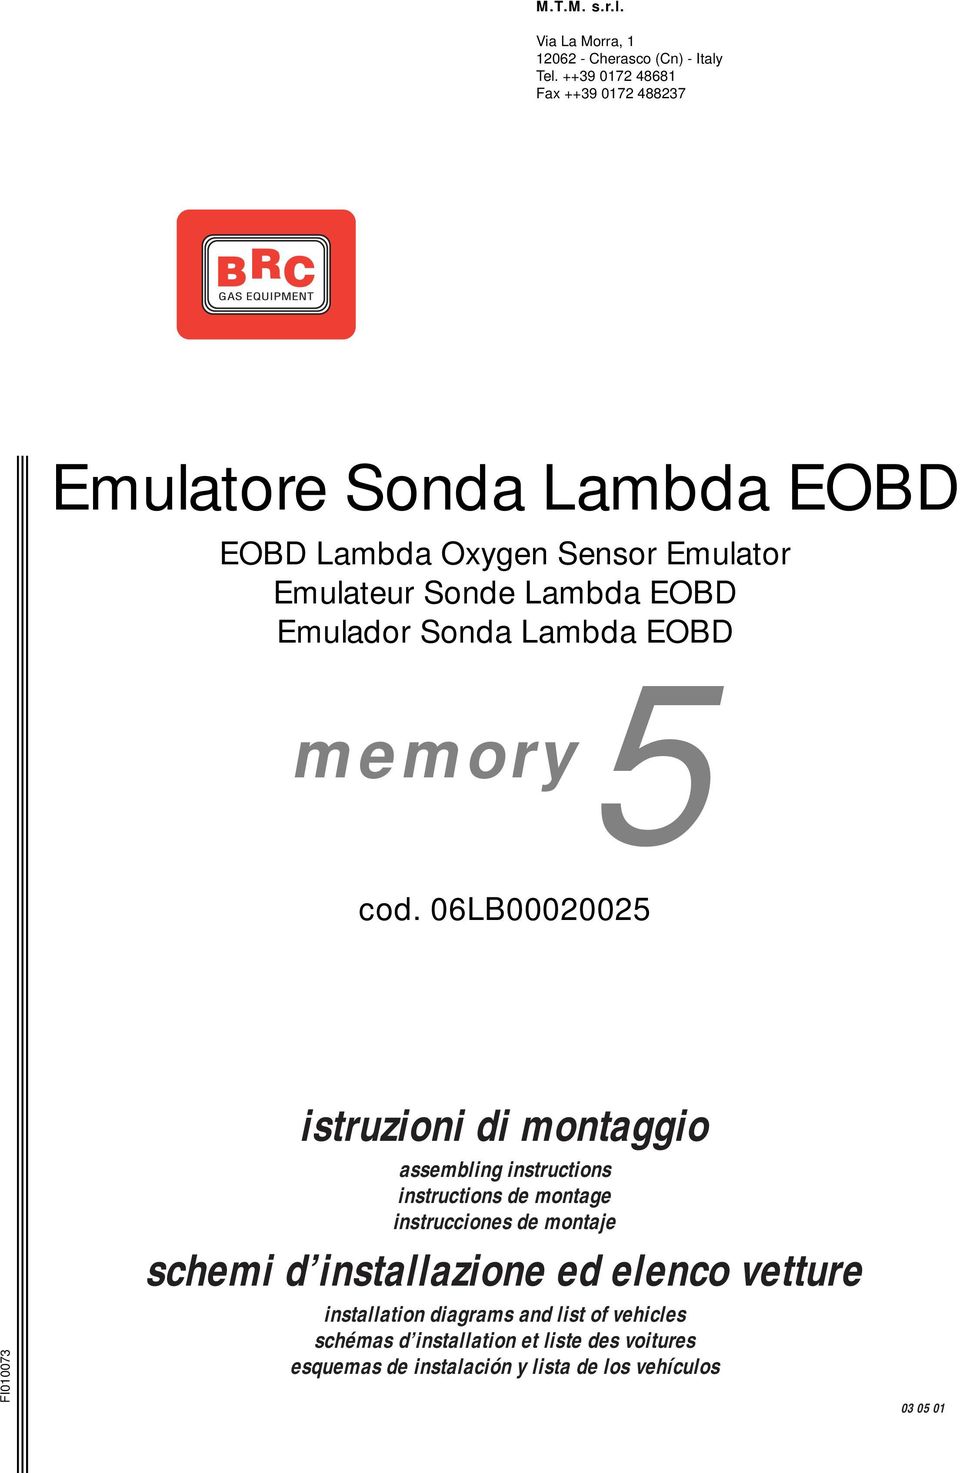 Lambda EOBD memory cod.